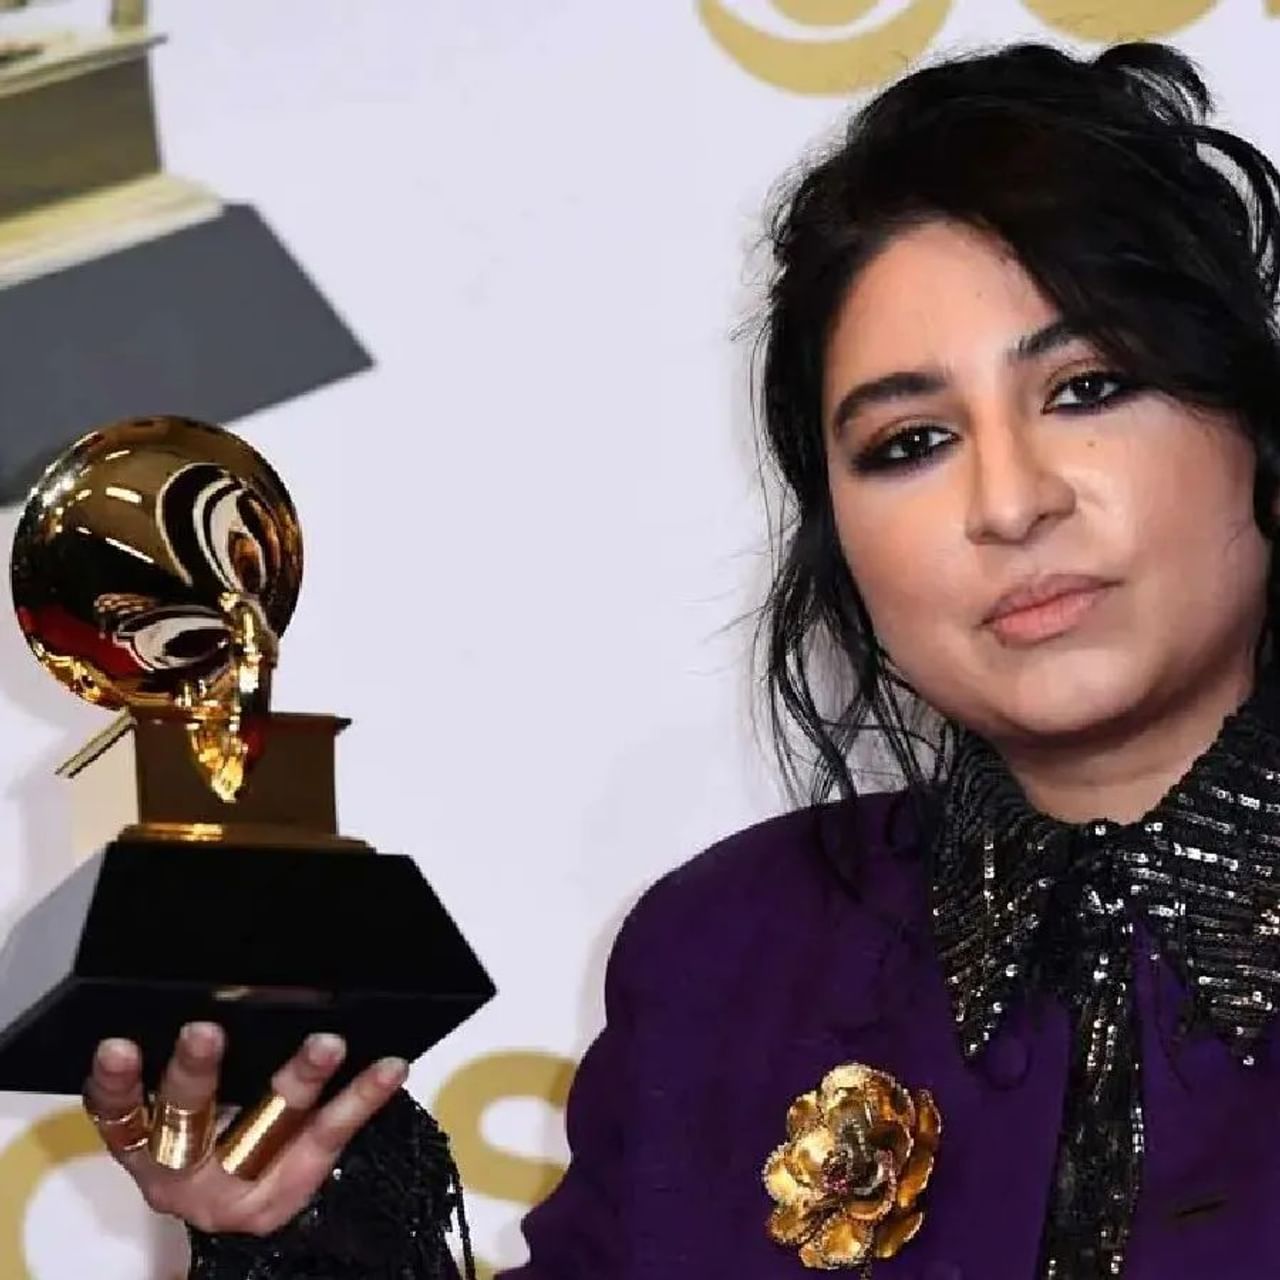 અરુજ આફતાબ ગ્રેમી એવોર્ડ (Grammy Award) મેળવનારી પ્રથમ પાકિસ્તાની ગાયિકા (Pakistani Singer) બની છે. તેમને 'મોહબ્બત' ગીત માટે બેસ્ટ ગ્લોબલ મ્યુઝિક પર્ફોર્મન્સની શ્રેણીમાં આ એવોર્ડ આપવામાં આવ્યો છે. અરુજ આફતાબ (Arooj Aftab) હાલ અમેરિકાના બ્રુકલિનમાં રહે છે. તેઓ શ્રેષ્ઠ નવા કલાકારની શ્રેણીમાં પણ નોમિનેટ થયા હતા. 37 વર્ષીય આરુજ કહે છે કે, તે જે સૂફી, જાઝ અને ફોક પર કામ કરી રહી છે. તેને ખૂબ પસંદ કરવામાં આવી રહી છે.
